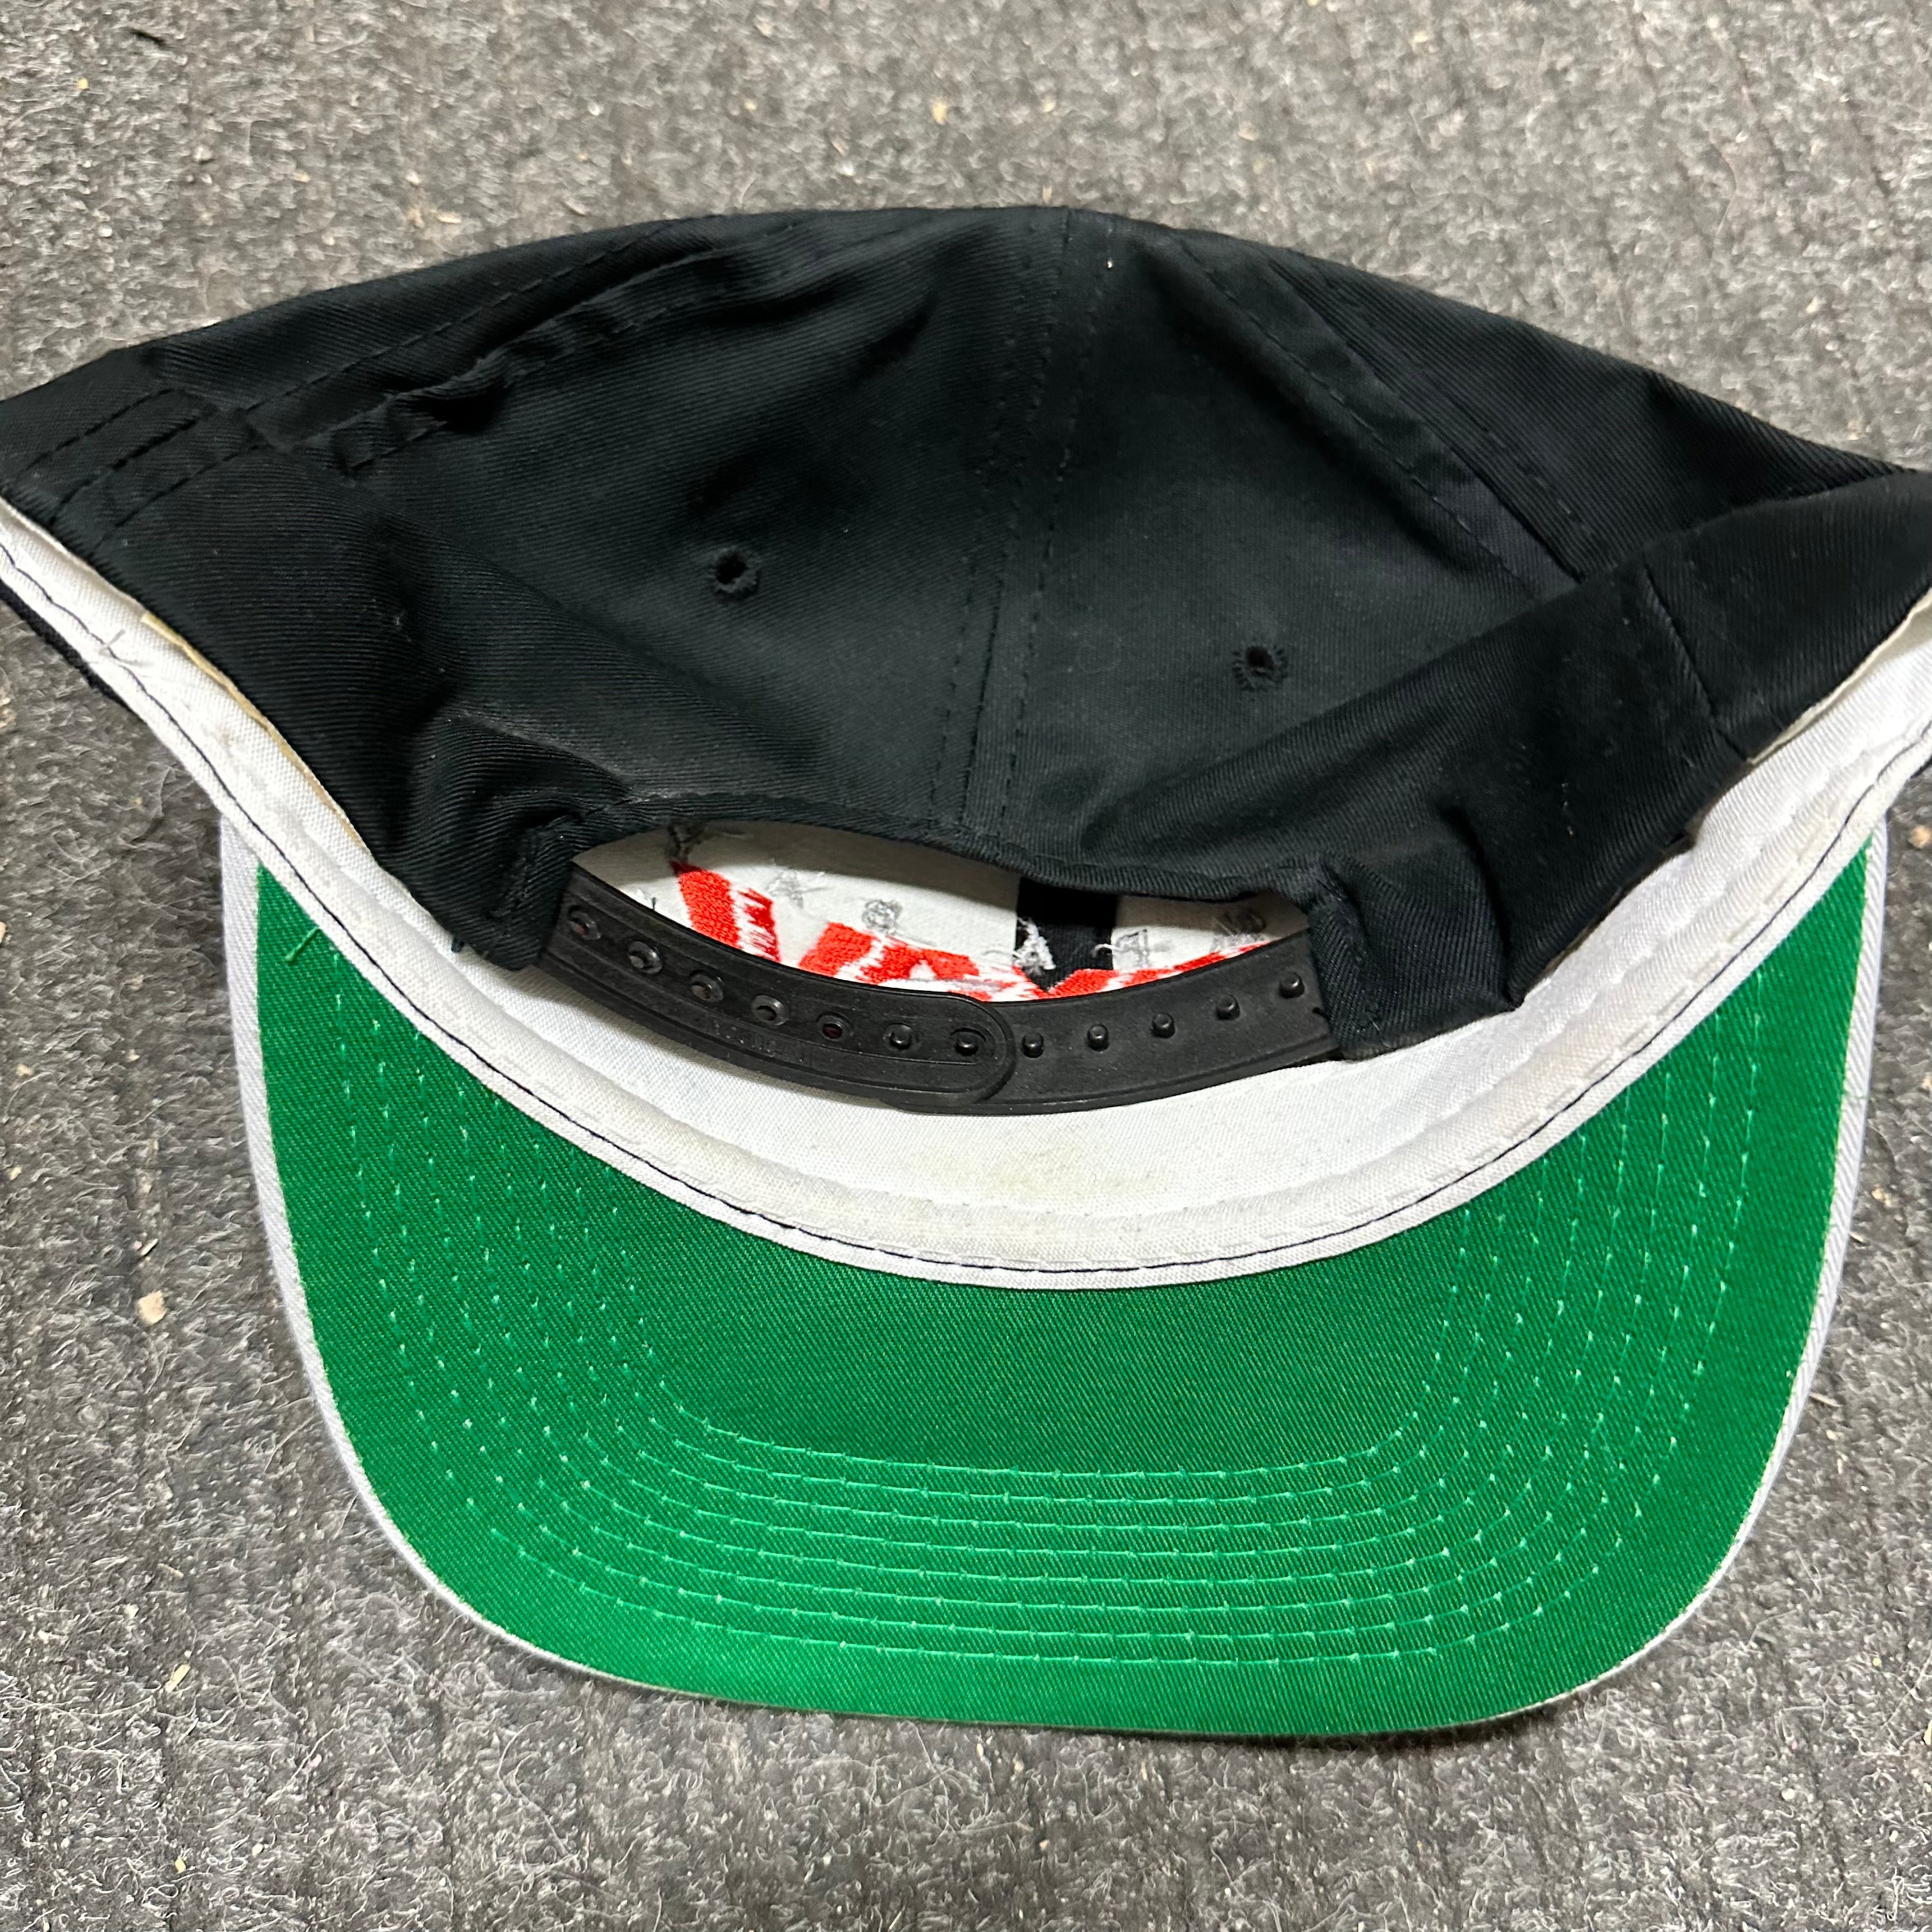 Super Bowl Tampa bay rare original snap back hat 1991